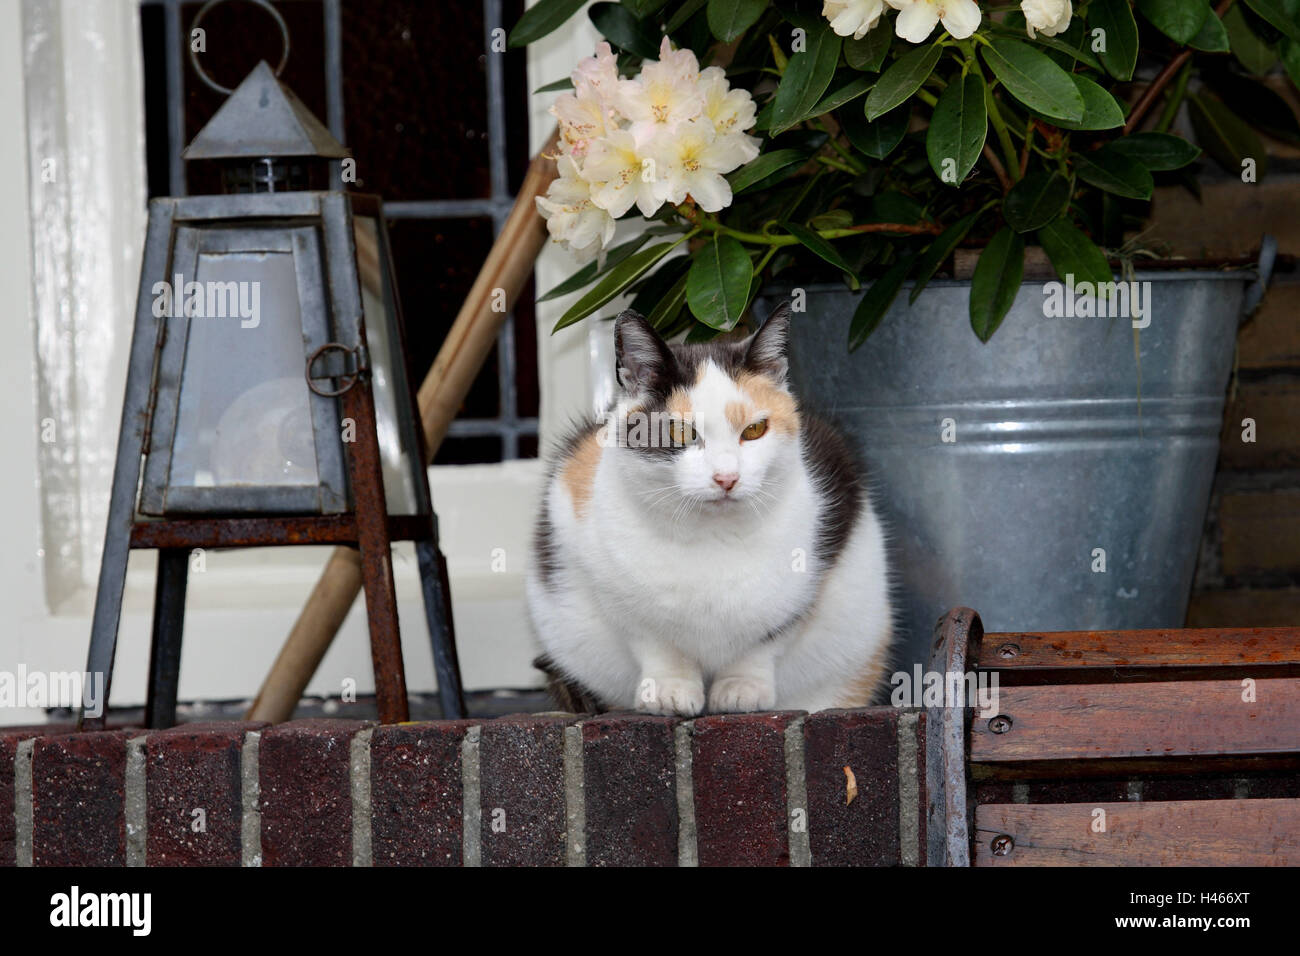 Gatto di casa, mura difensive, fiore vasca, Foto Stock